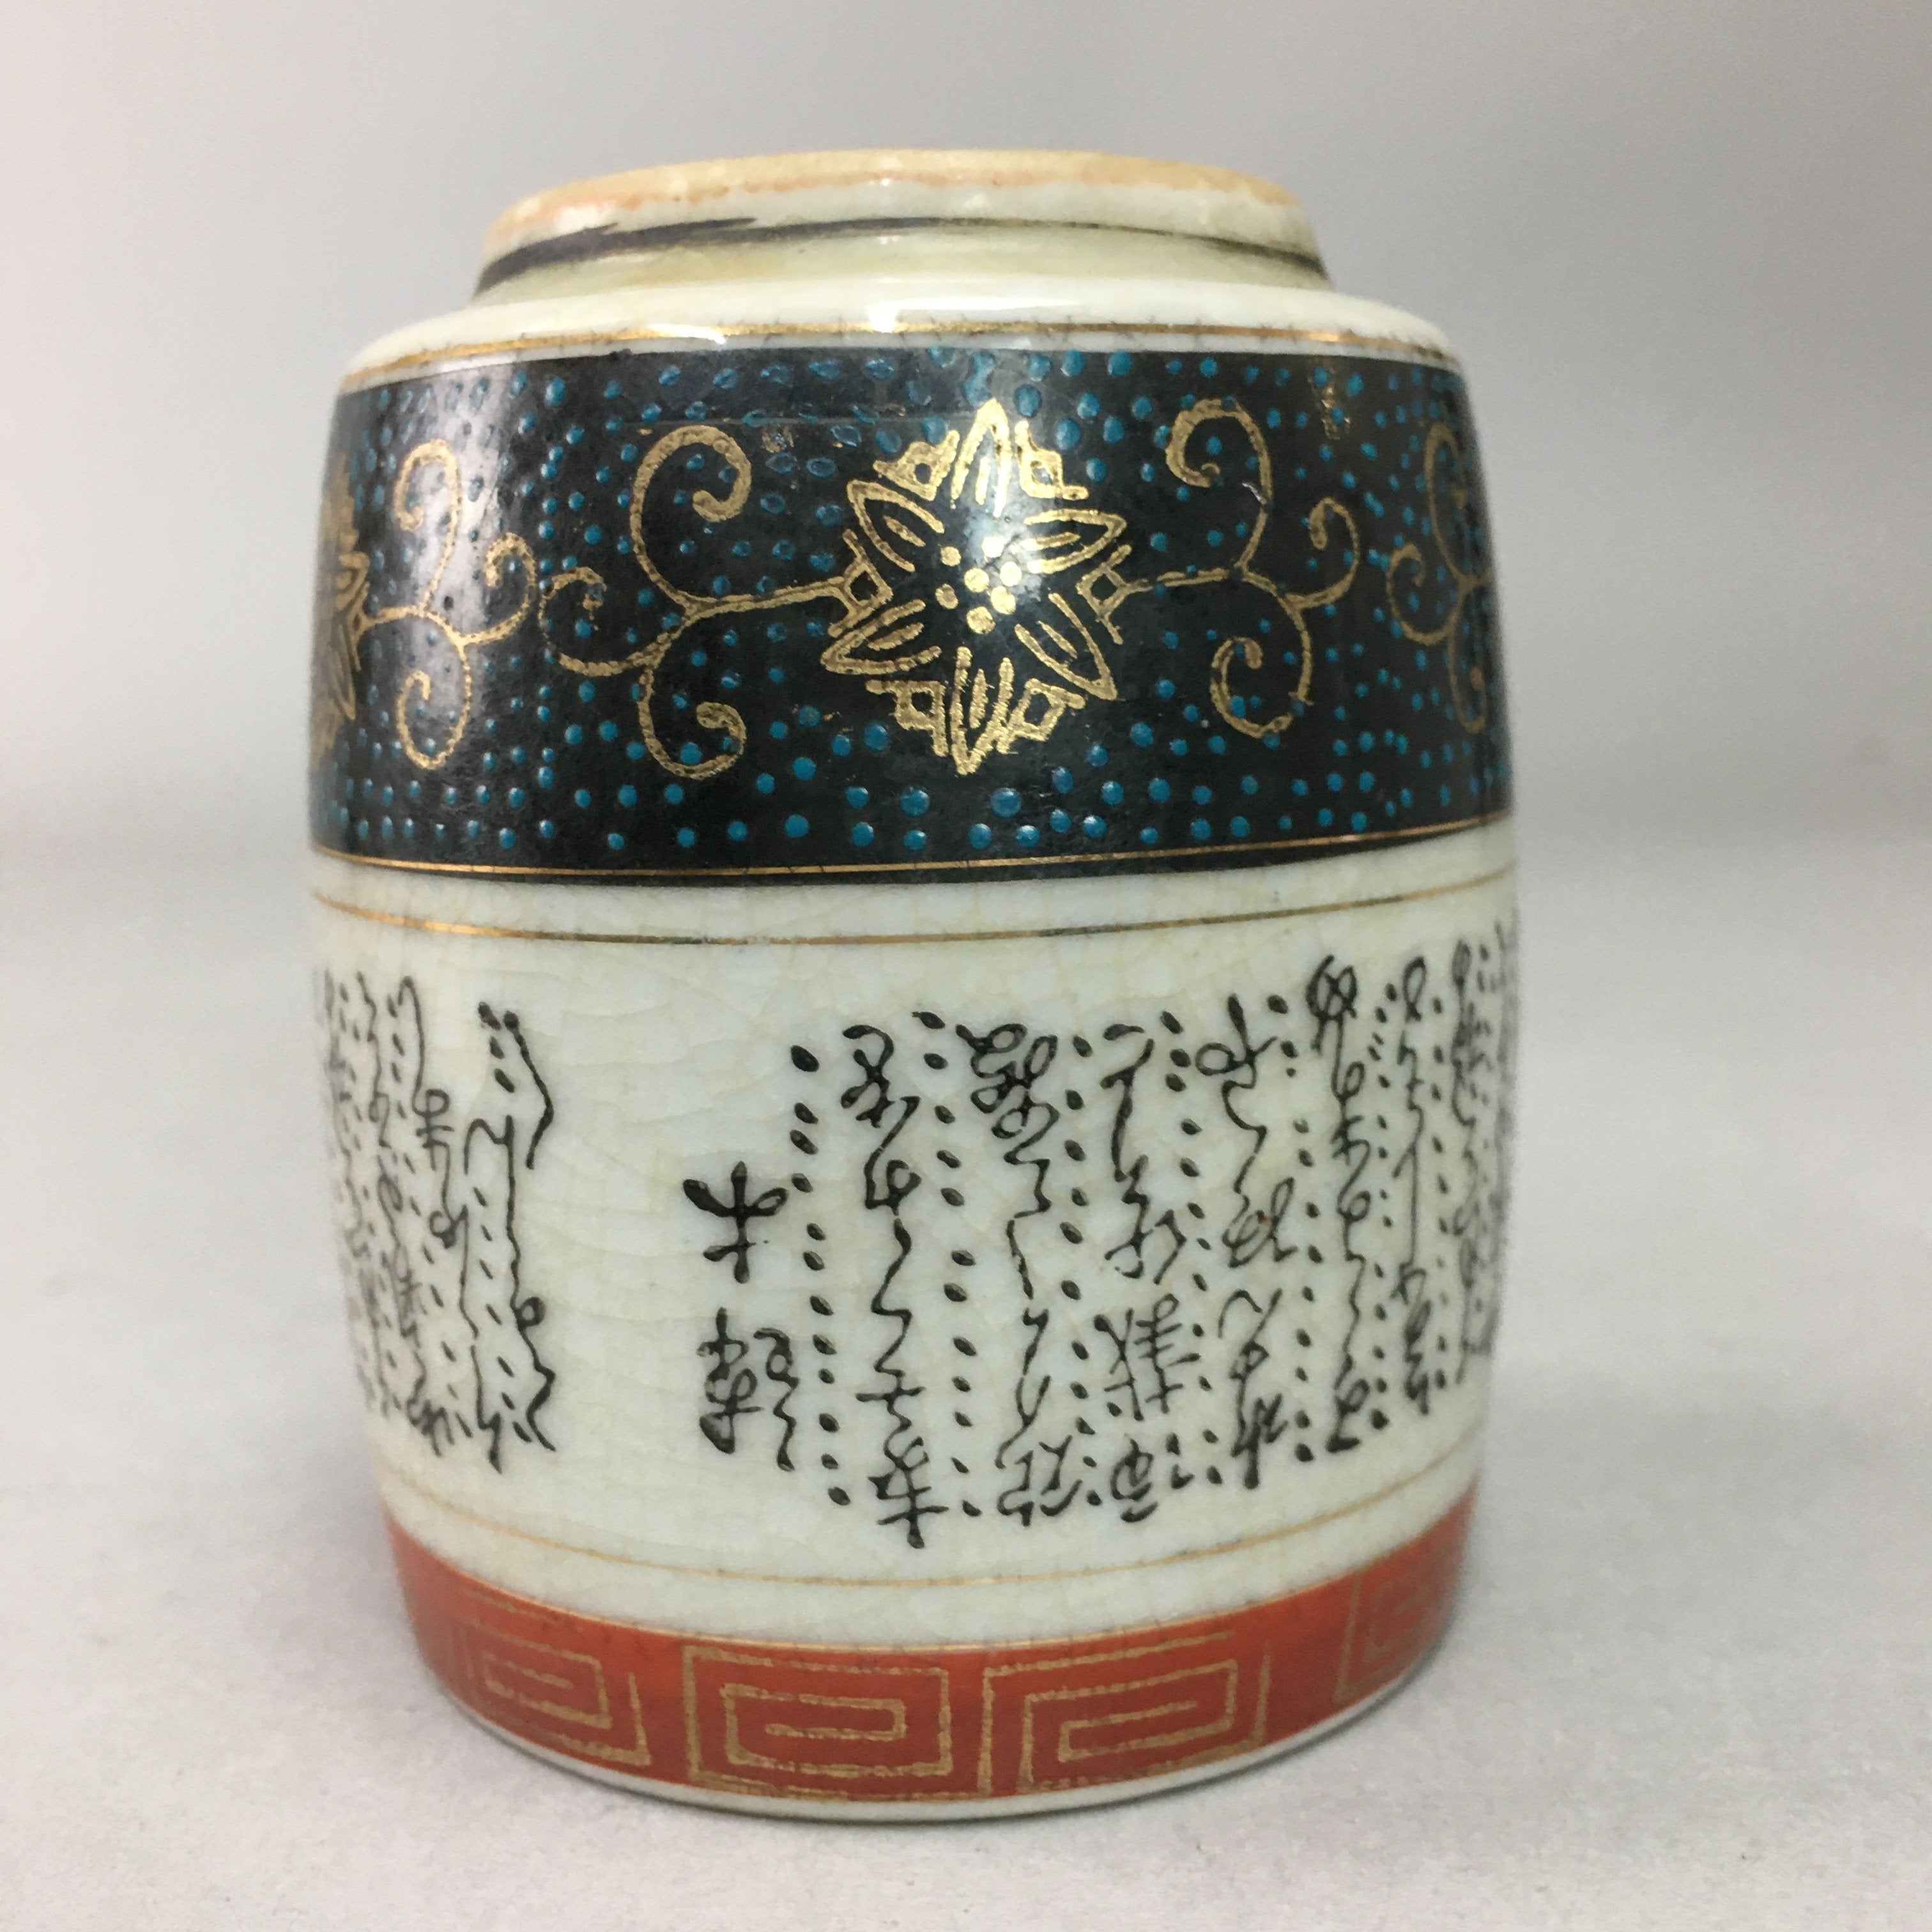 Japanese Ceramic Teacup Kutani ware Yunomi Vtg Pottery Sencha TC97